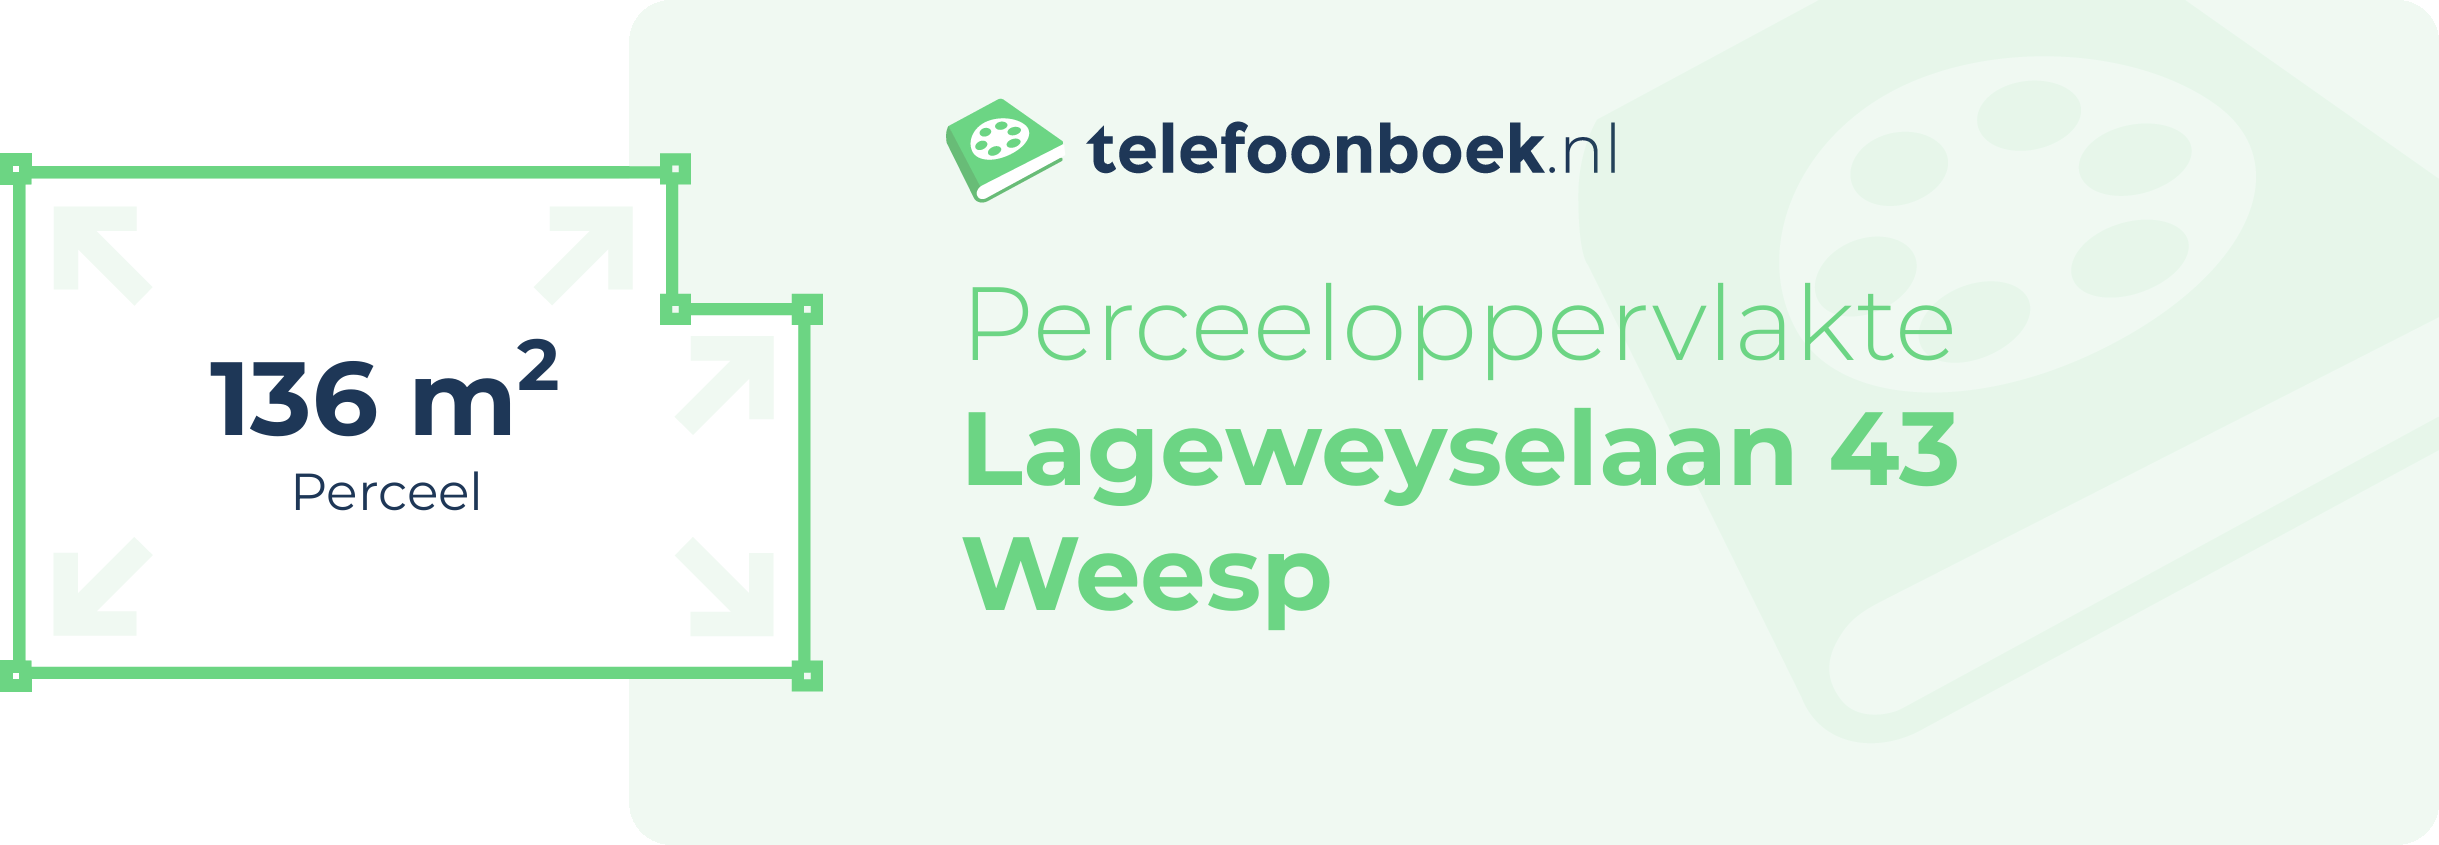 Perceeloppervlakte Lageweyselaan 43 Weesp